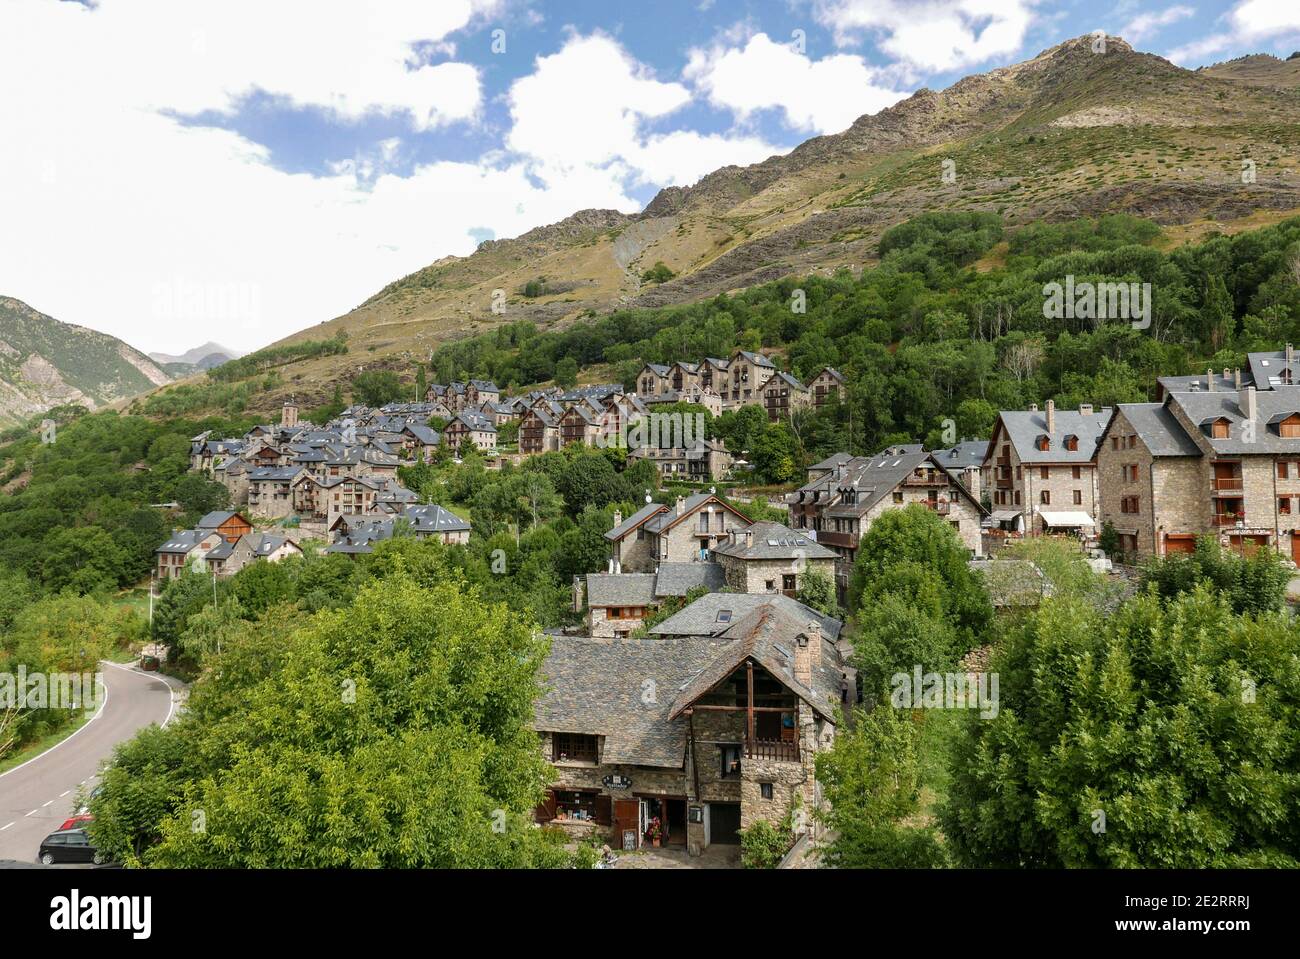 Spanien; Katalonien; Provinz Lleida: Das Dorf am Fuße des Pyrenäen-Skigebiets von Boi-Taull vom Kirchturm der Sant-Kirche aus gesehen Stockfoto